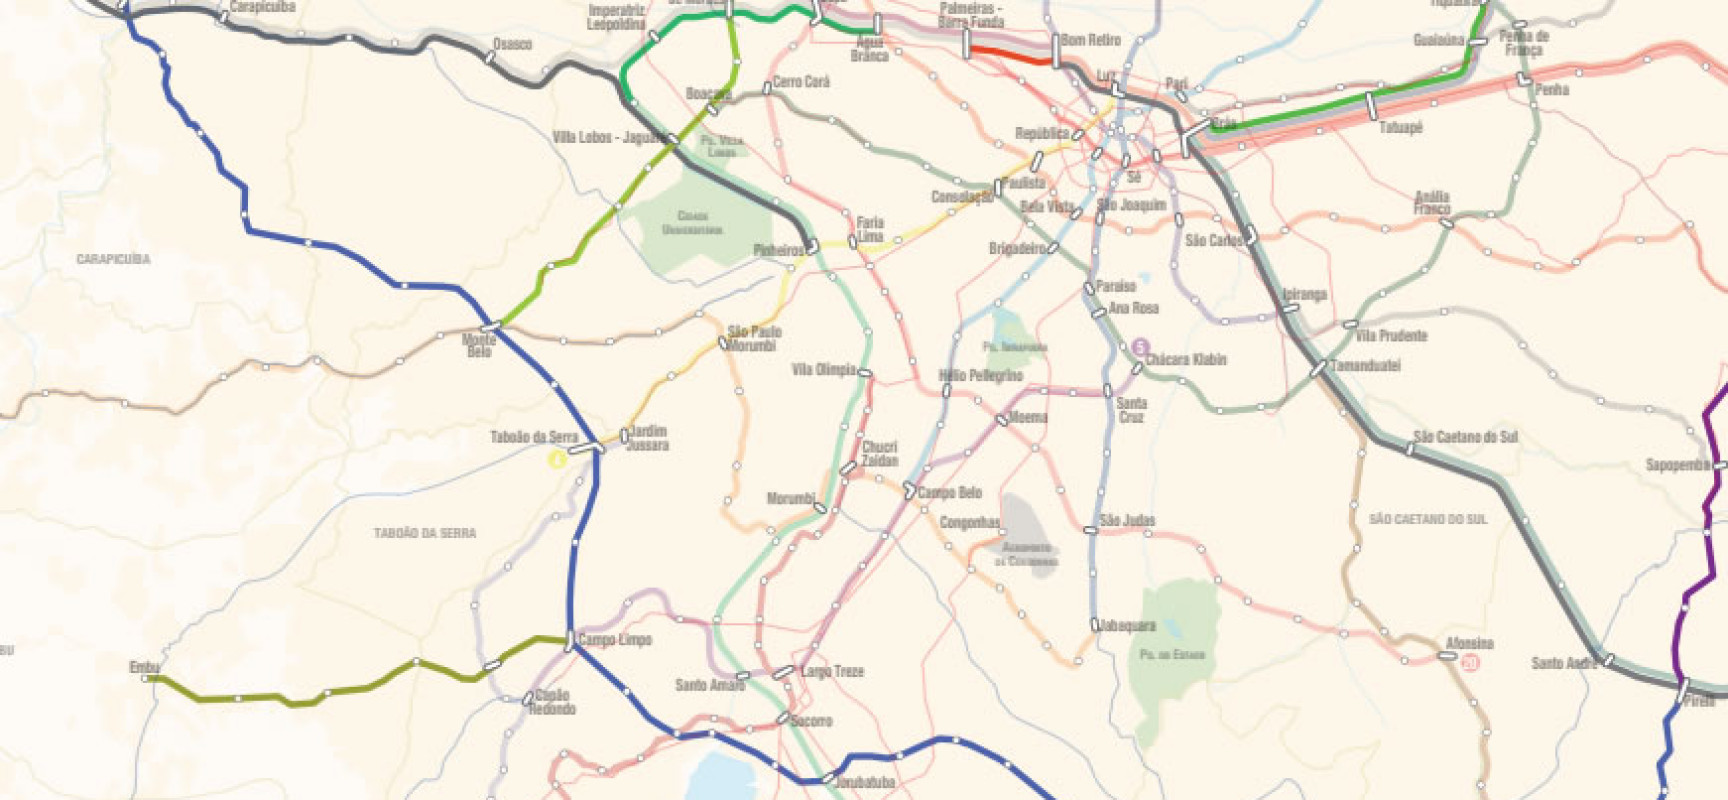 Futuras linhas do Metrô SP e CPTM: O ramal Guarulhos – ABC e o Arco Sul